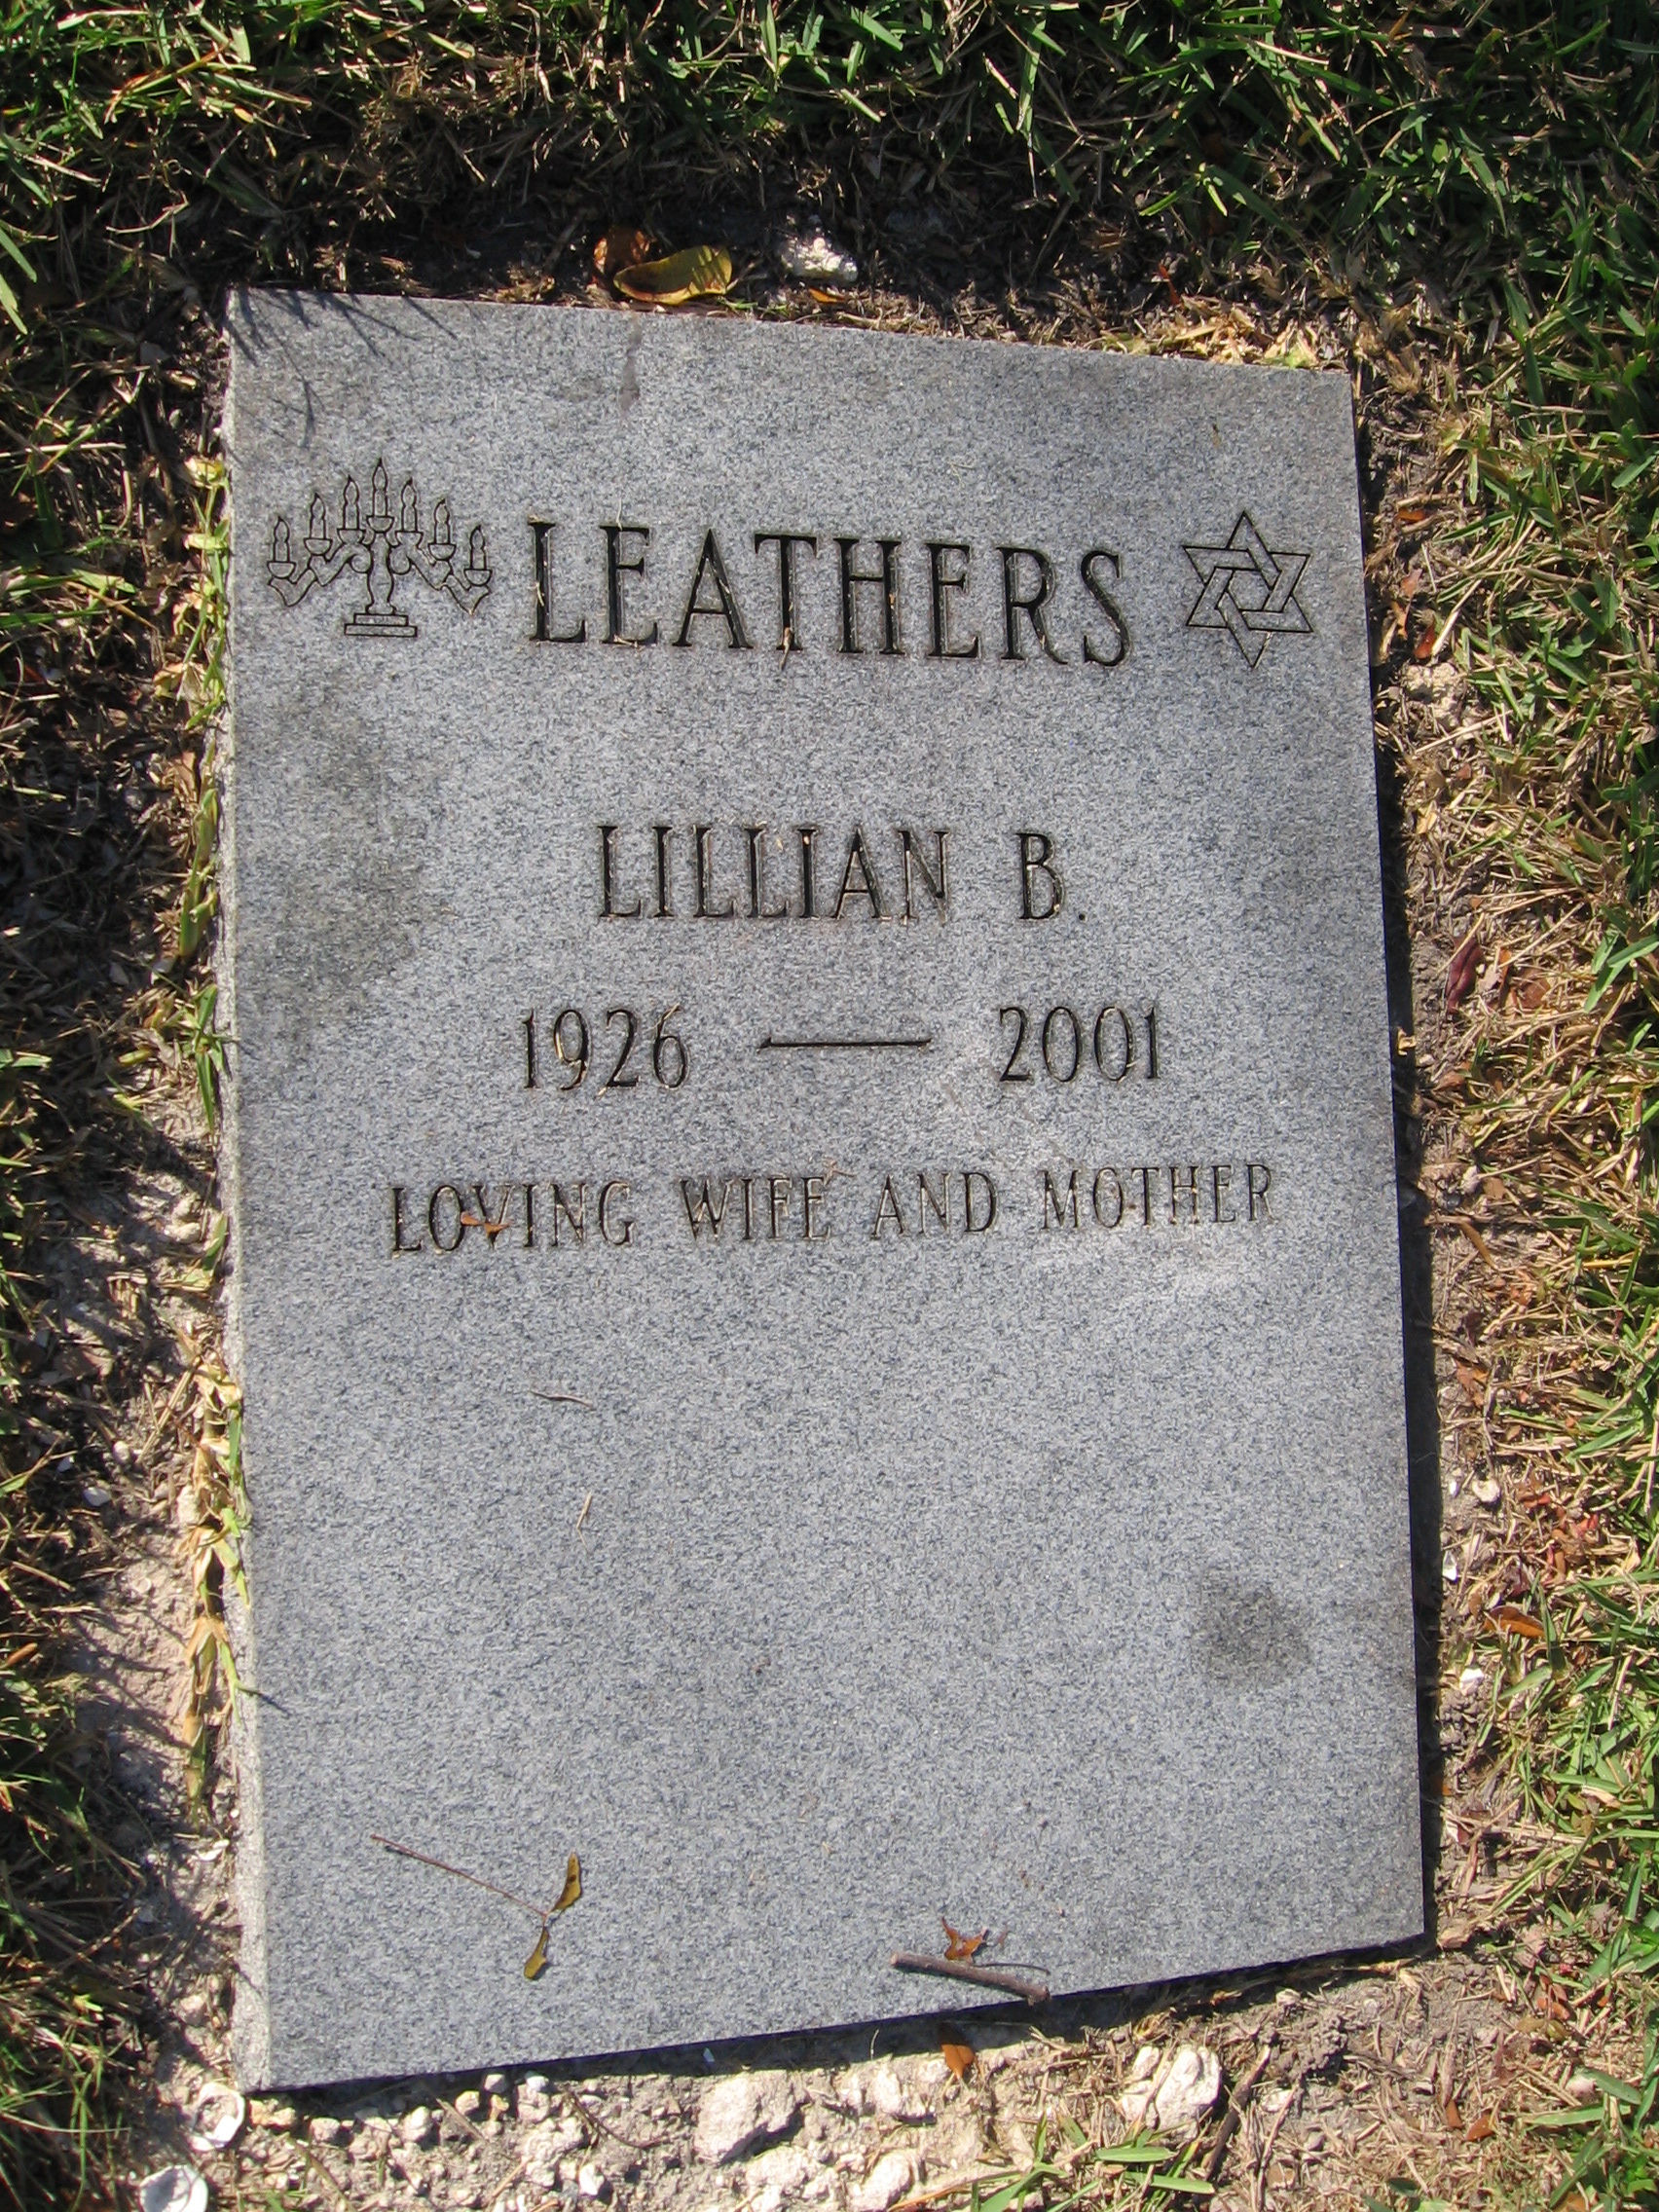 Lillian B Leathers